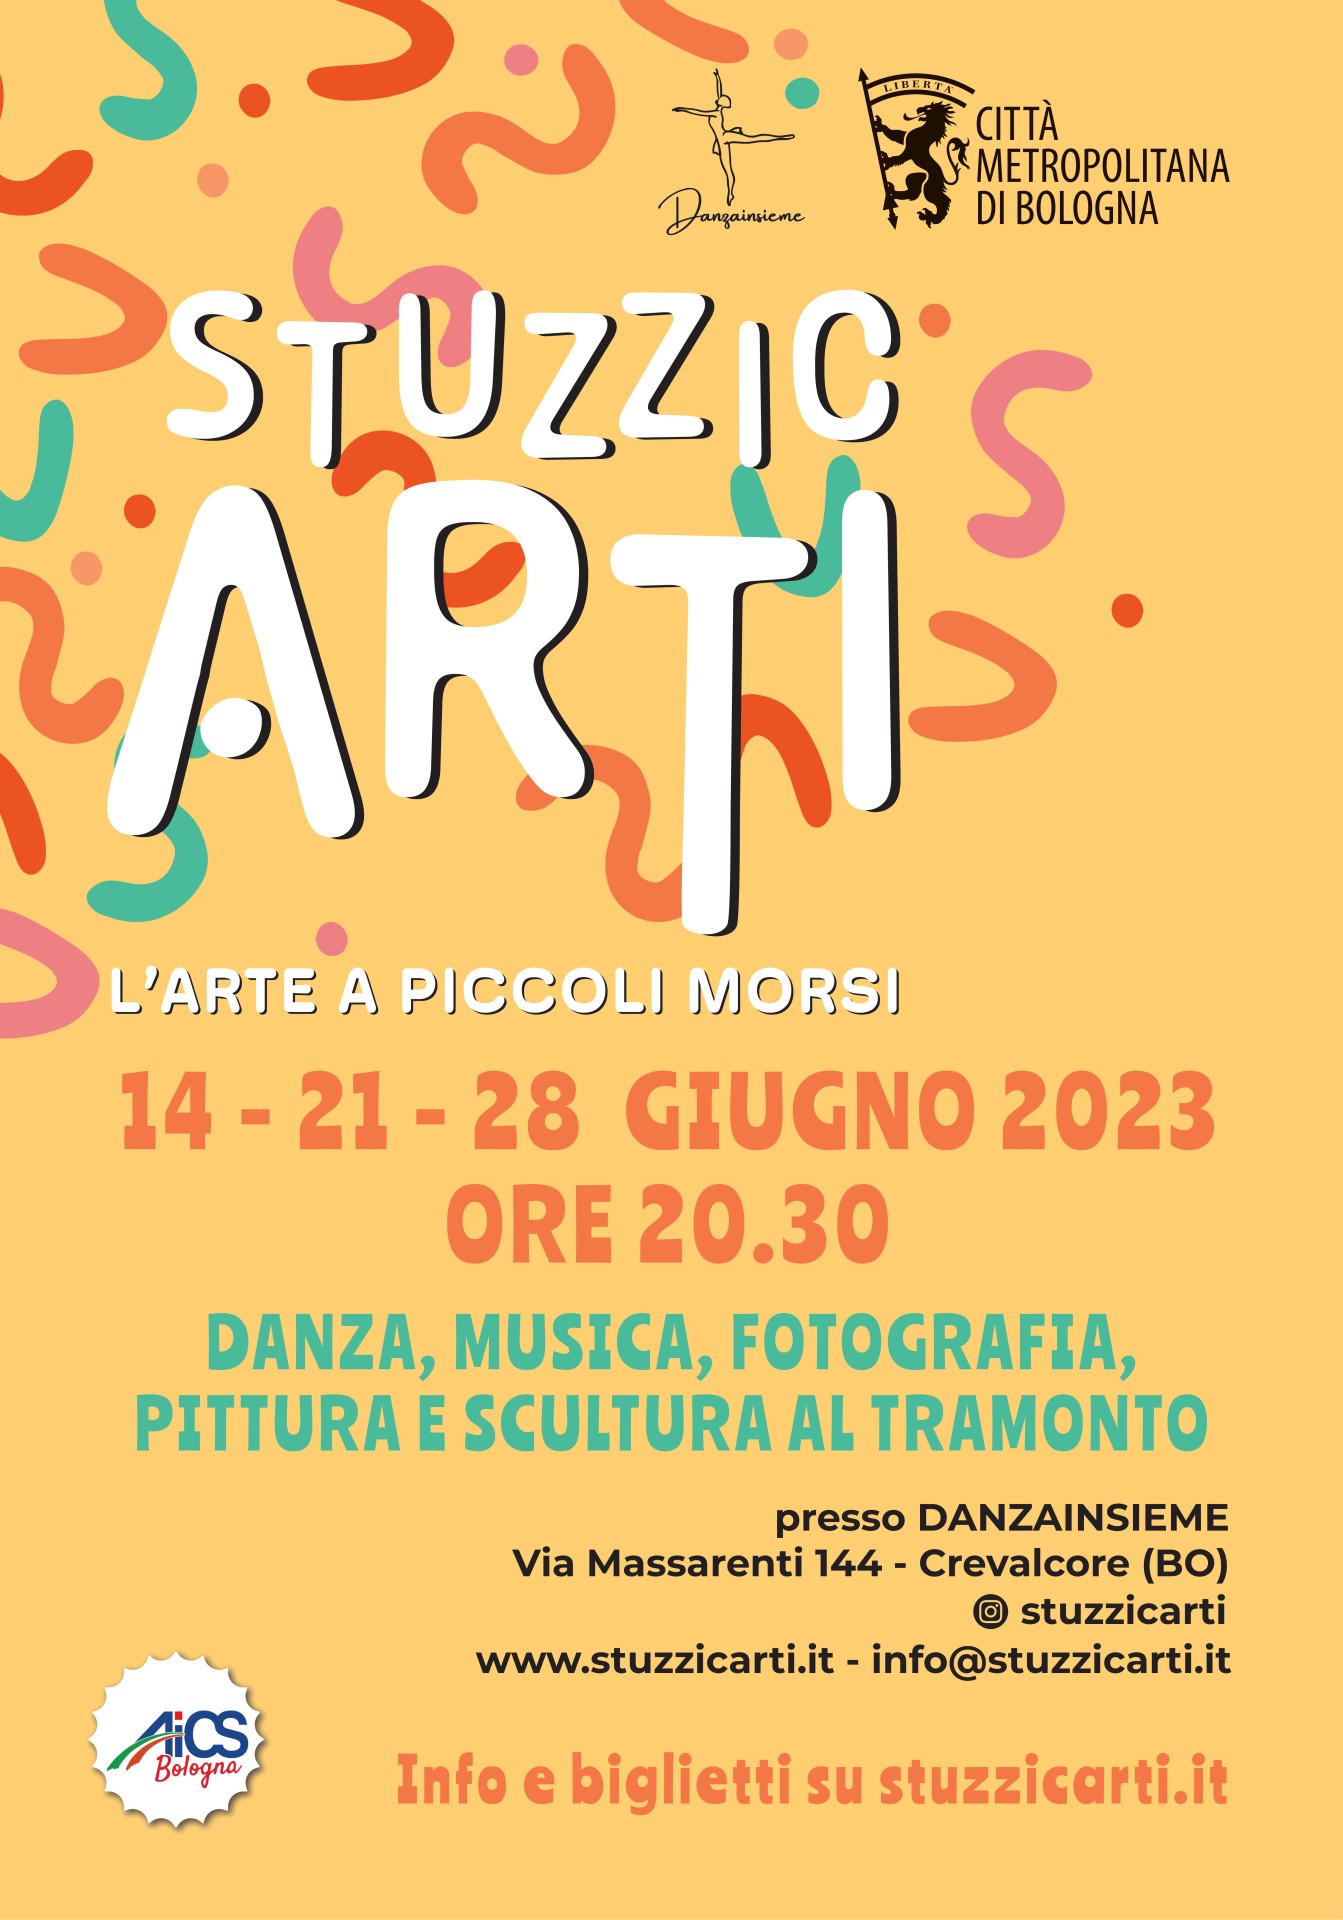 STUZZICARTI - L'ARTE A PICCOLI MORSI 2023